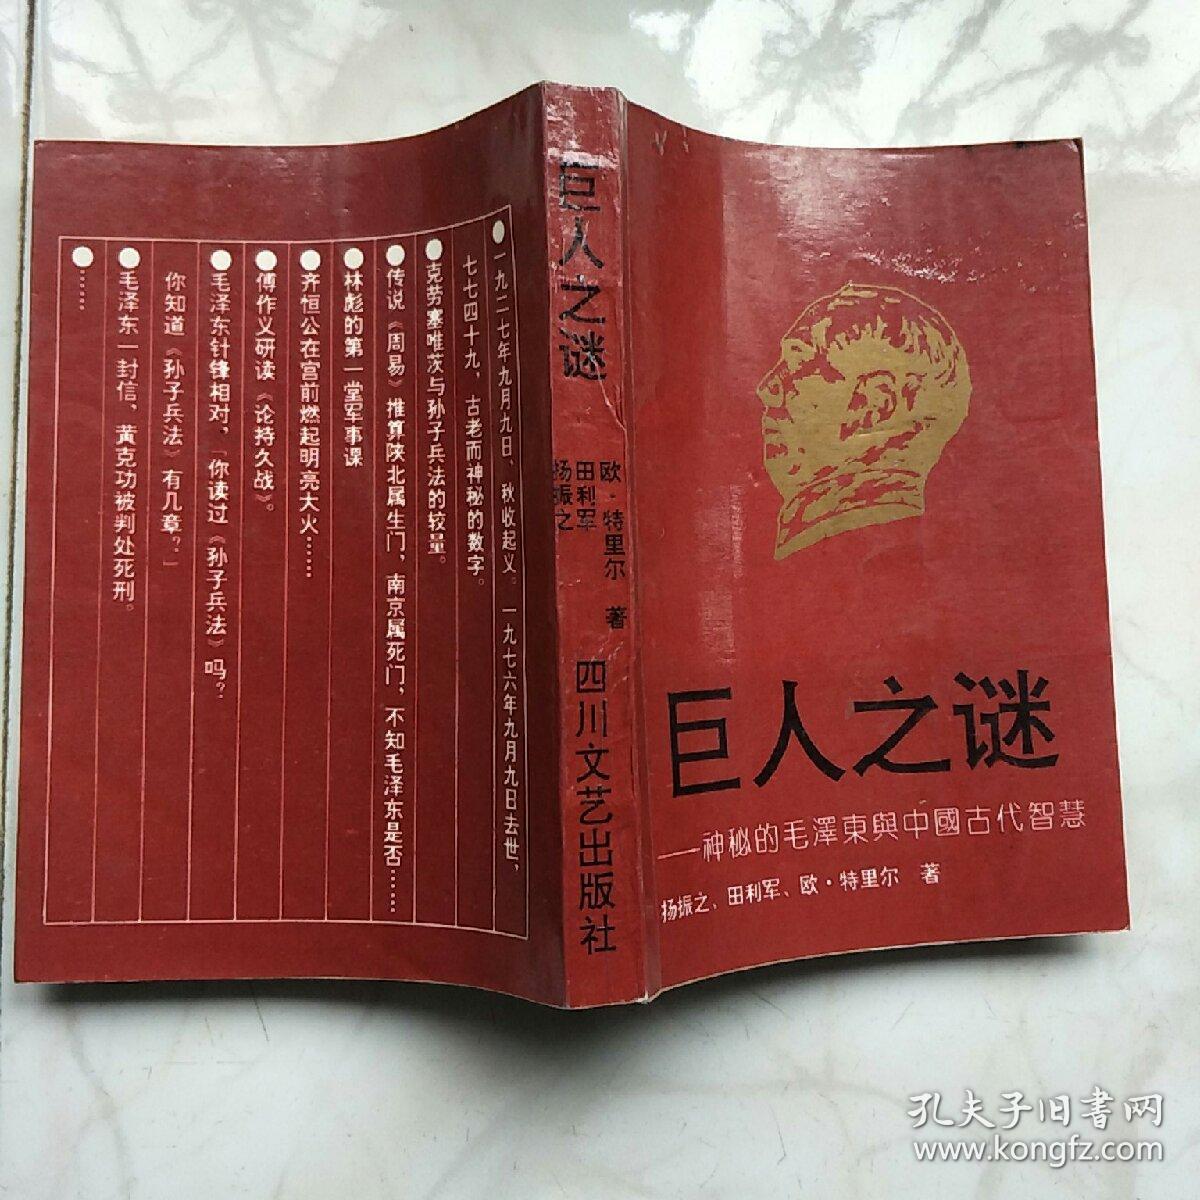 巨人之谜–神秘的毛泽东与中国古代智慧